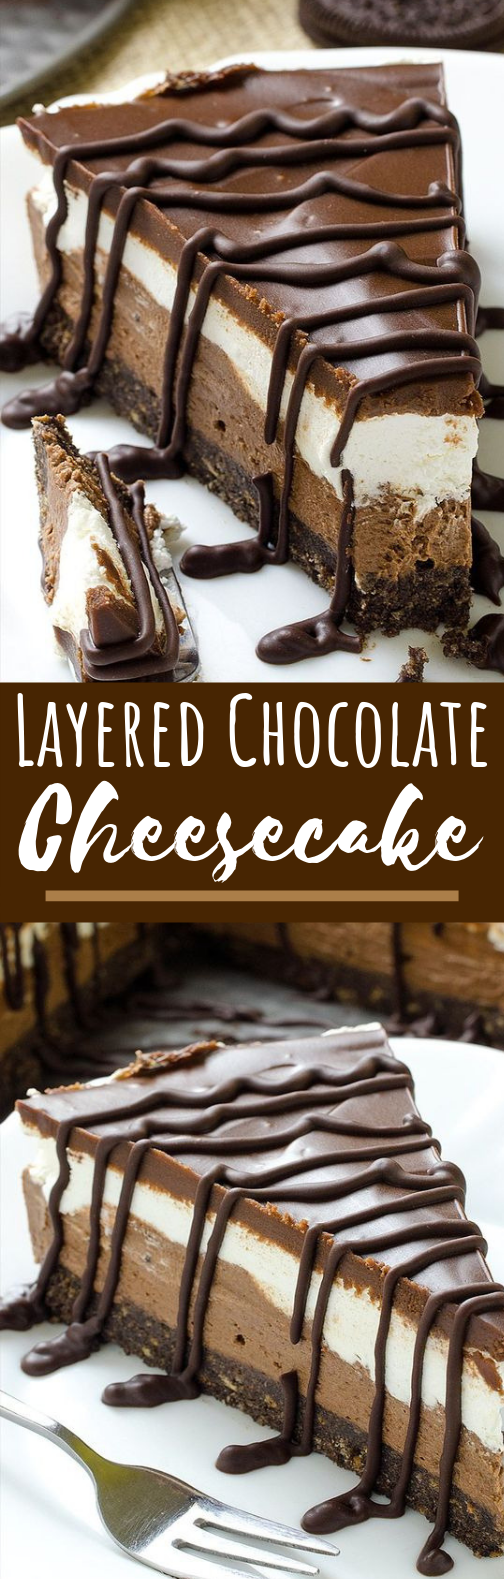 No Bake Layered Chocolate Cheesecake with Oreo Crust #cake #desserts